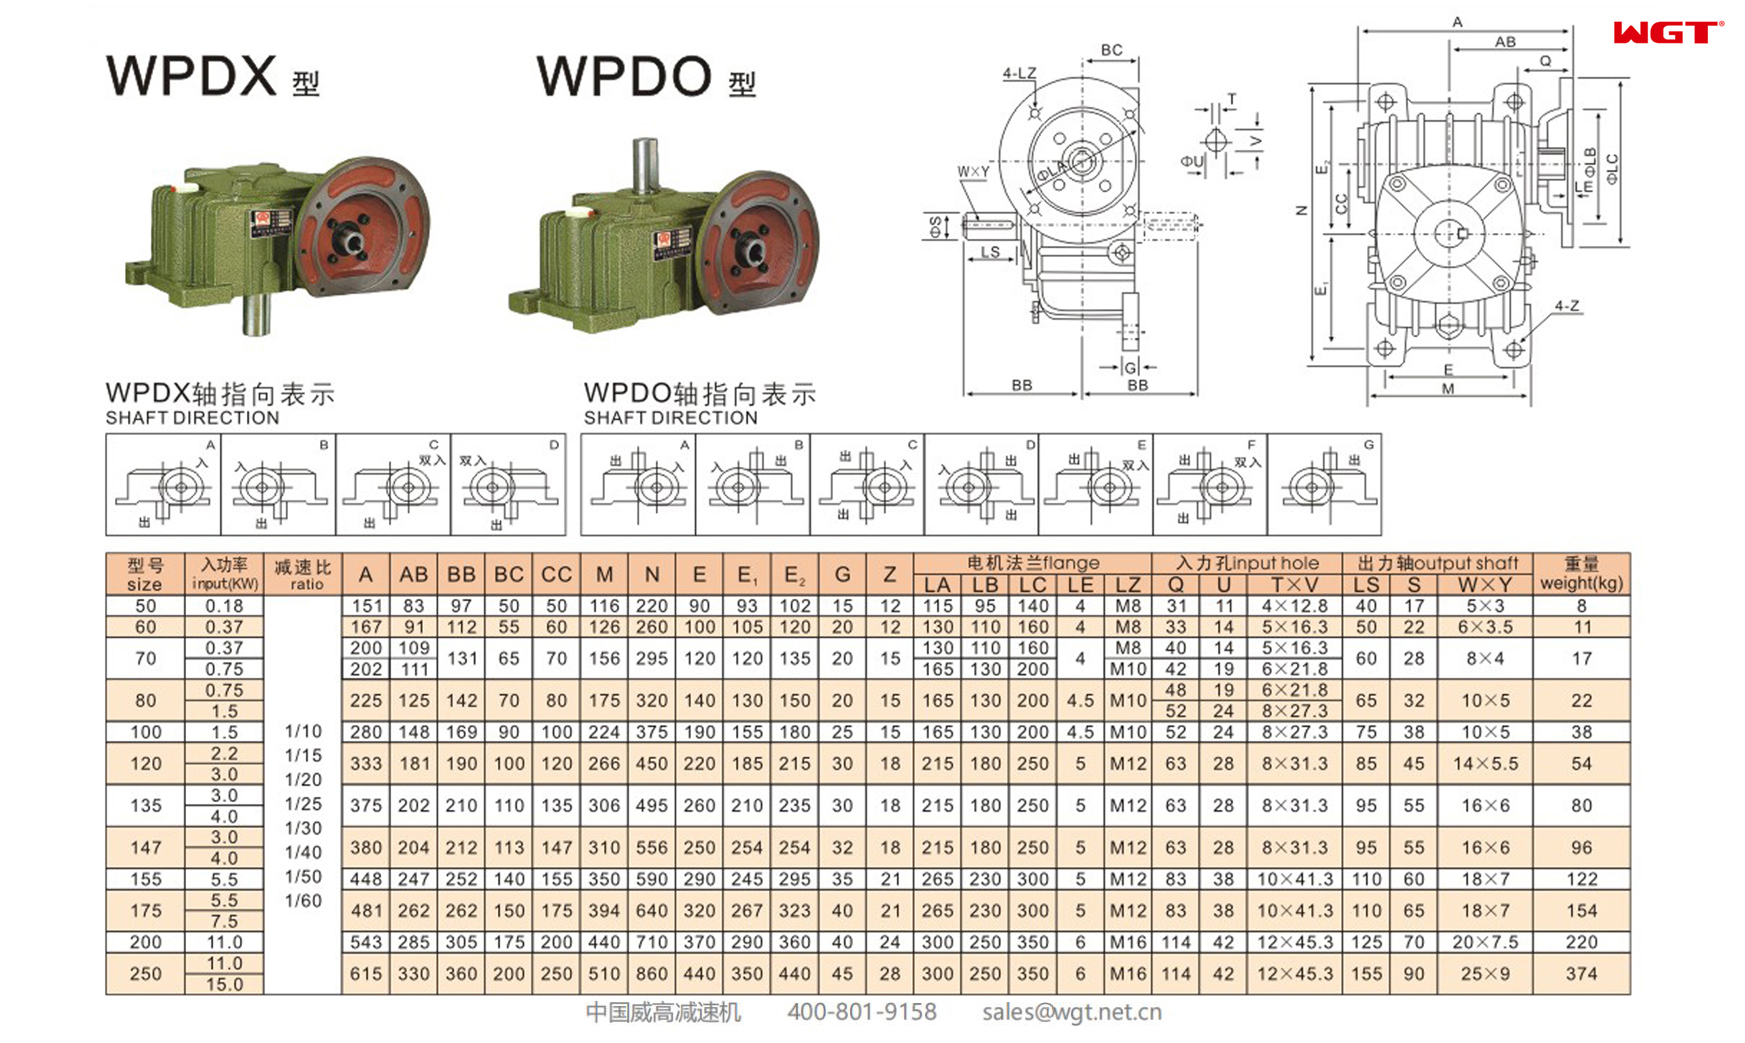 WPDX80 Червячный редуктор Односкоростной редуктор